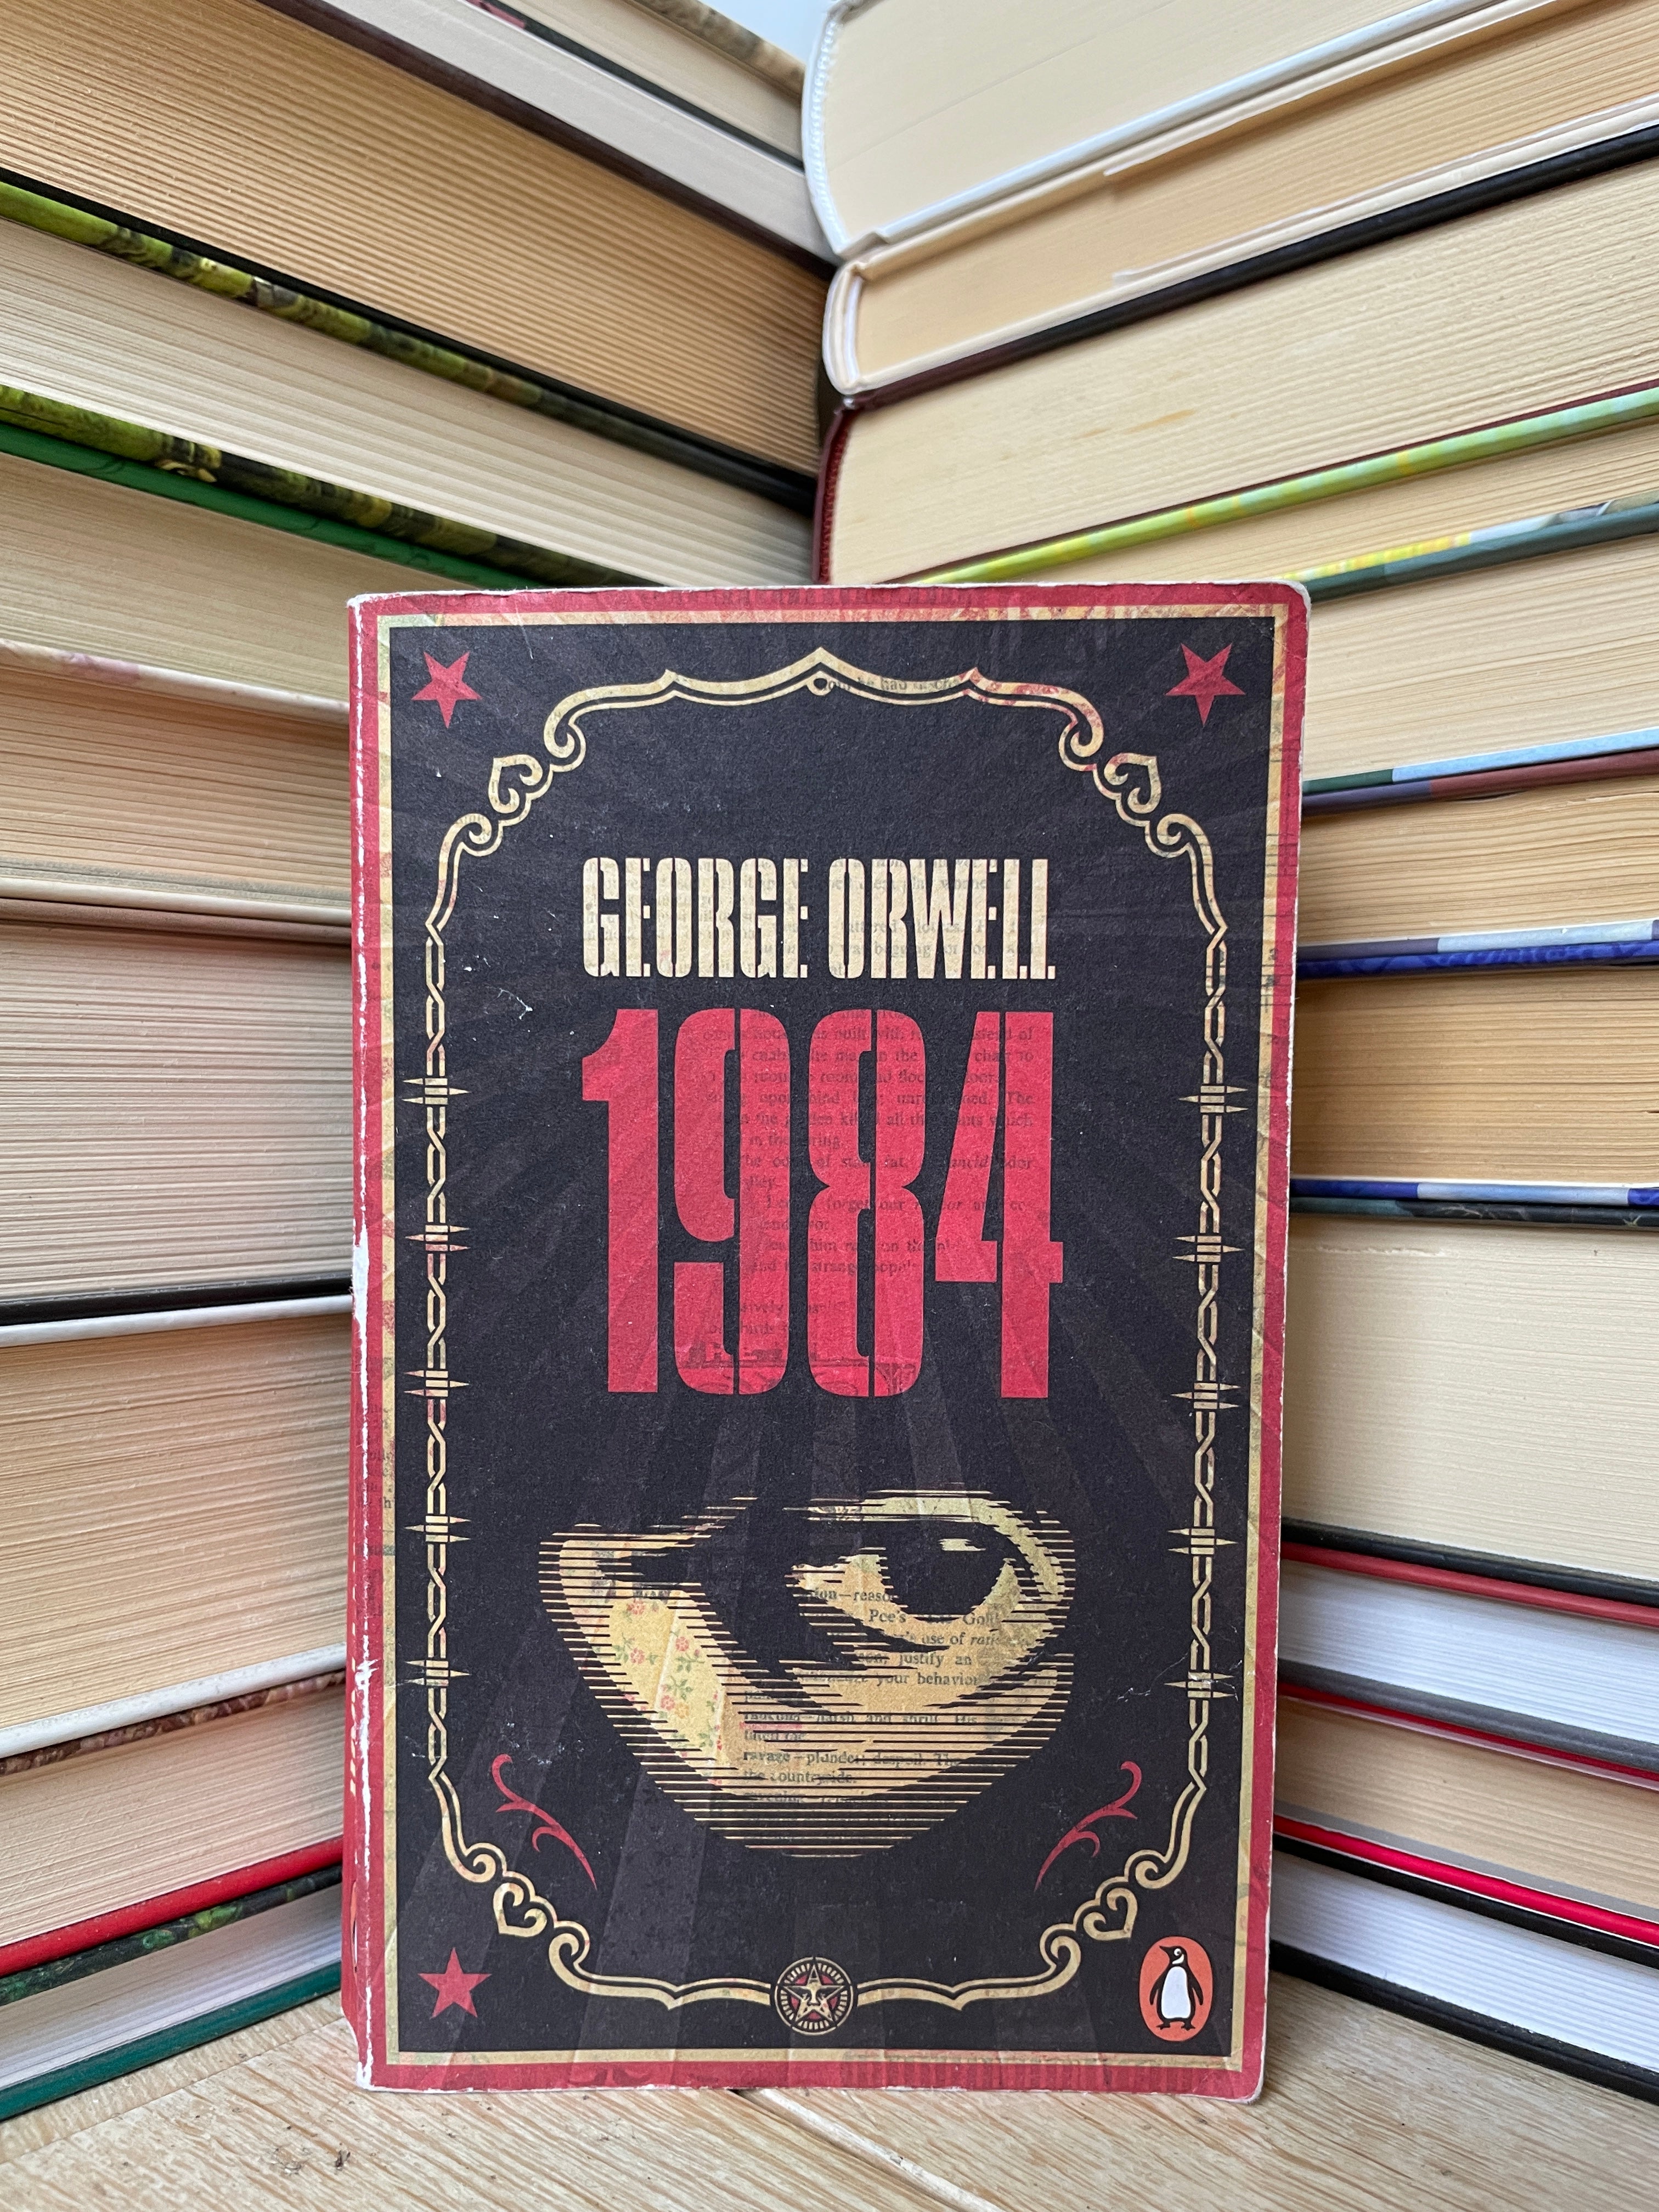 1984 - George Orwell - €9.50